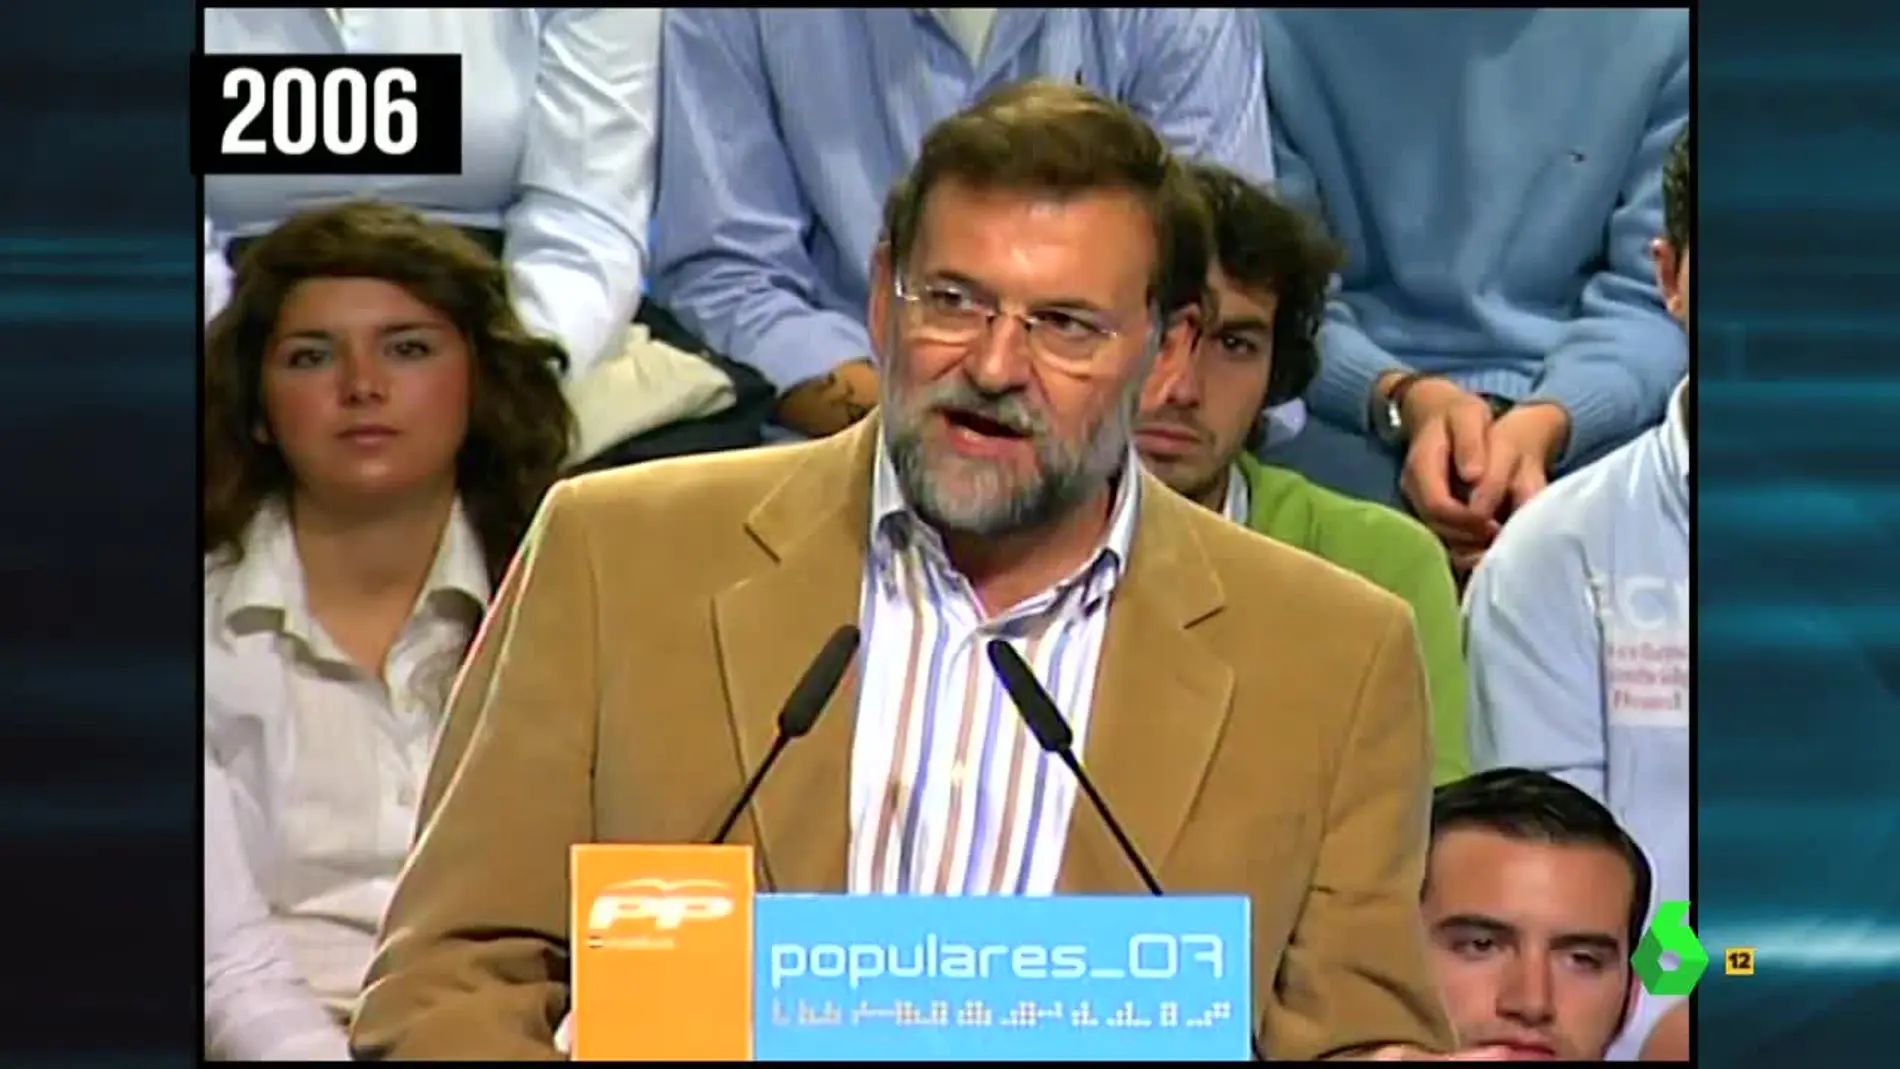 Rajoy en 2006